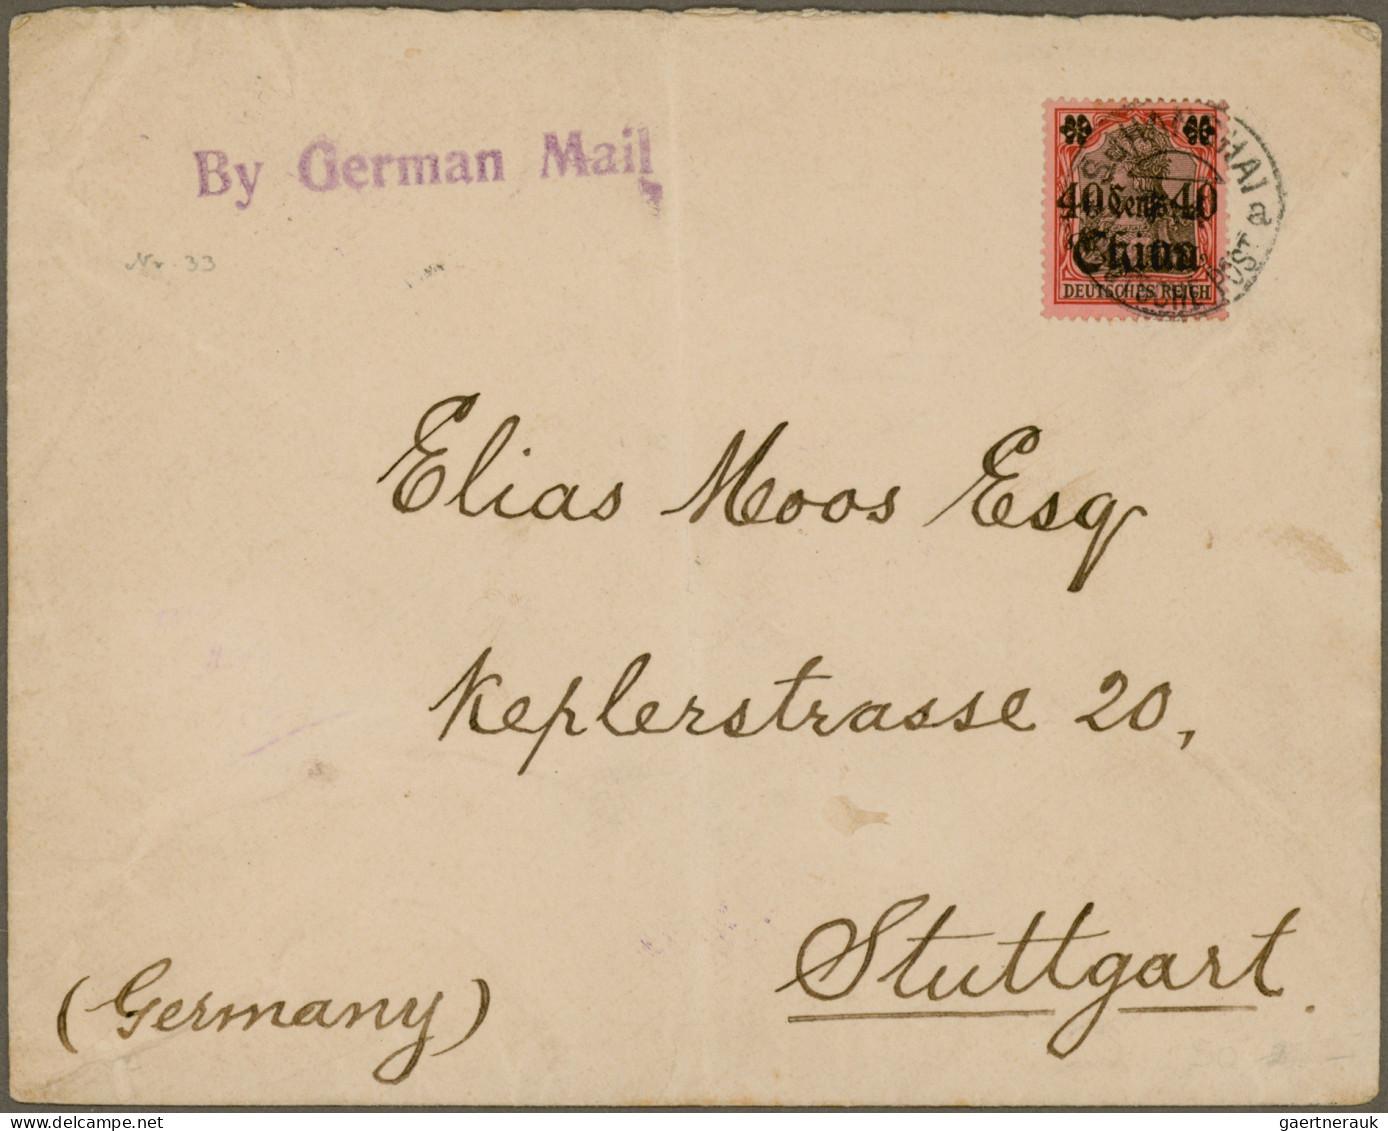 Deutsches Reich: 1900/1945 (ca.), Beachtlicher Posten von über 150 Belegen, dabe